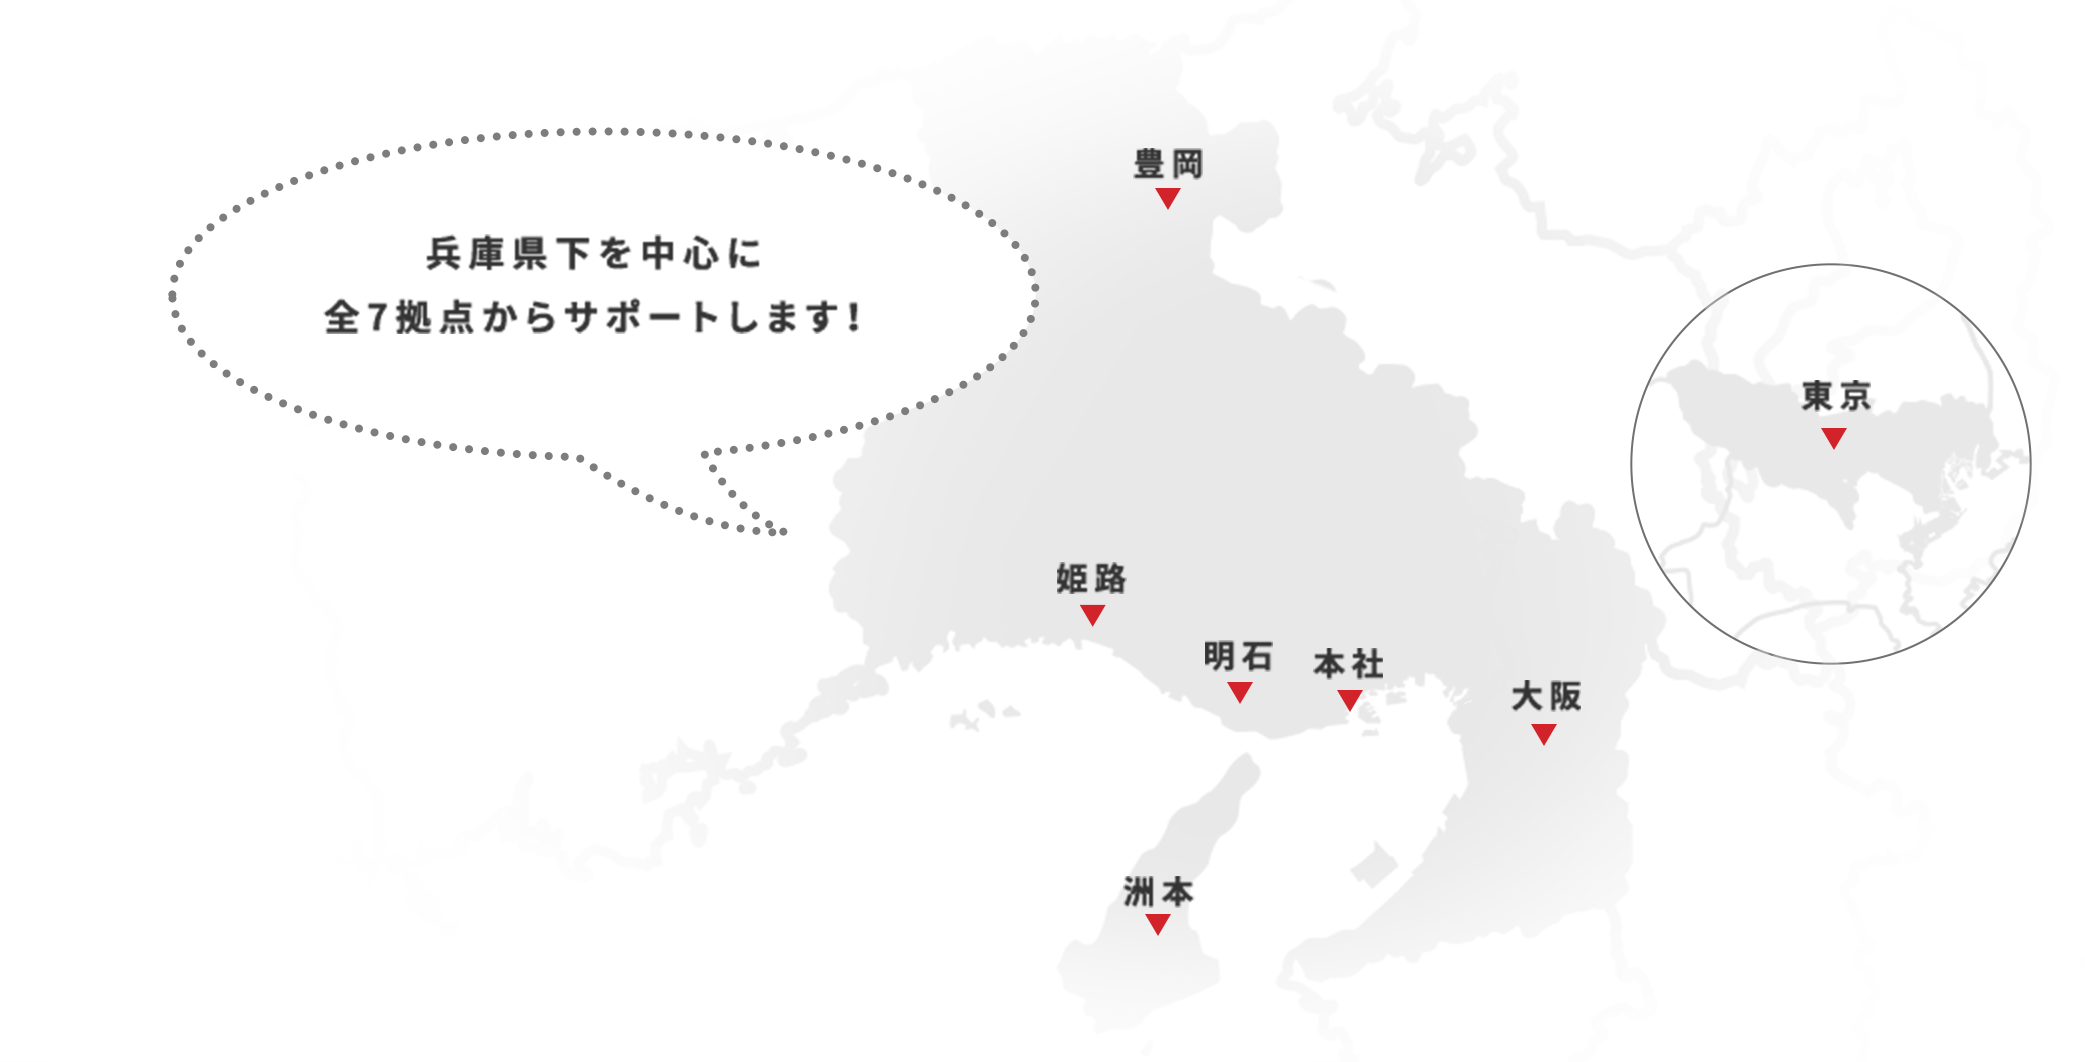 兵庫県下全てを活動範囲とした全7拠点から、サポートします！